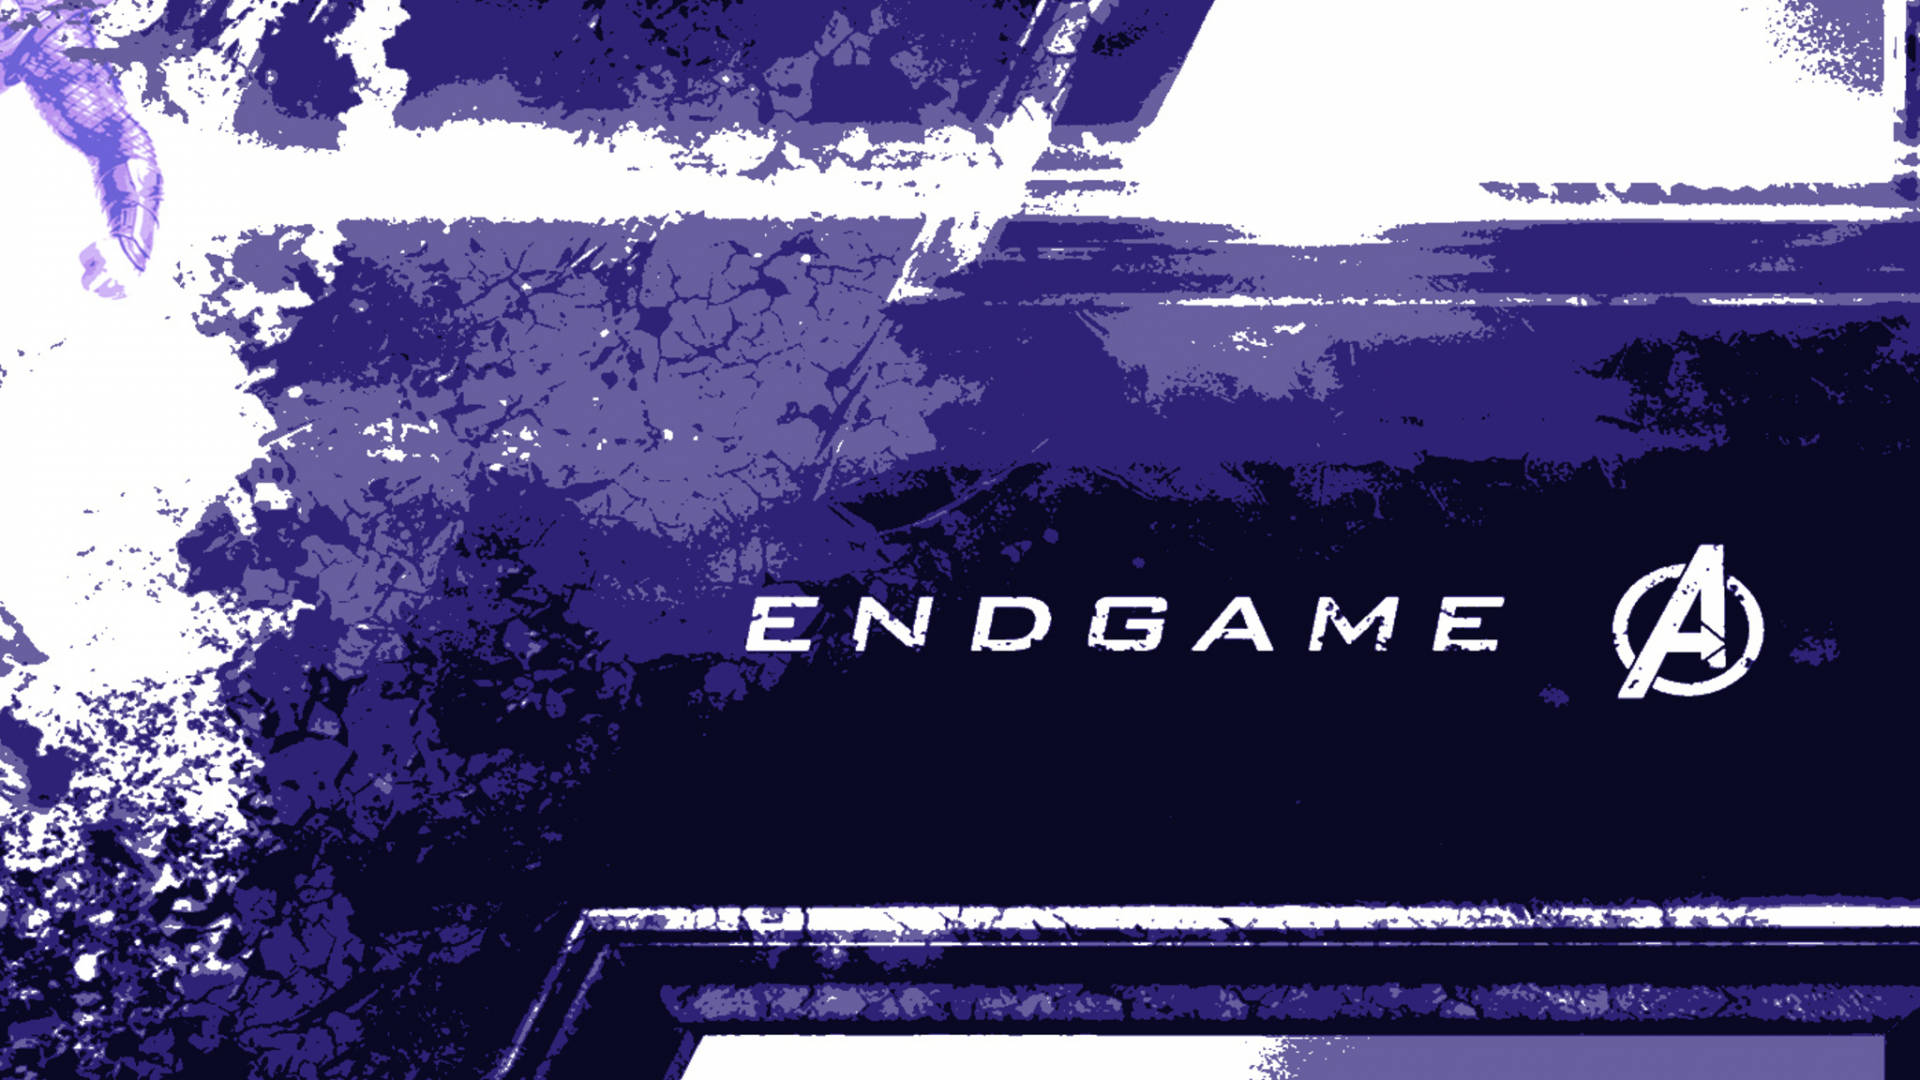 Endgame Avengers Logo Wallpaper